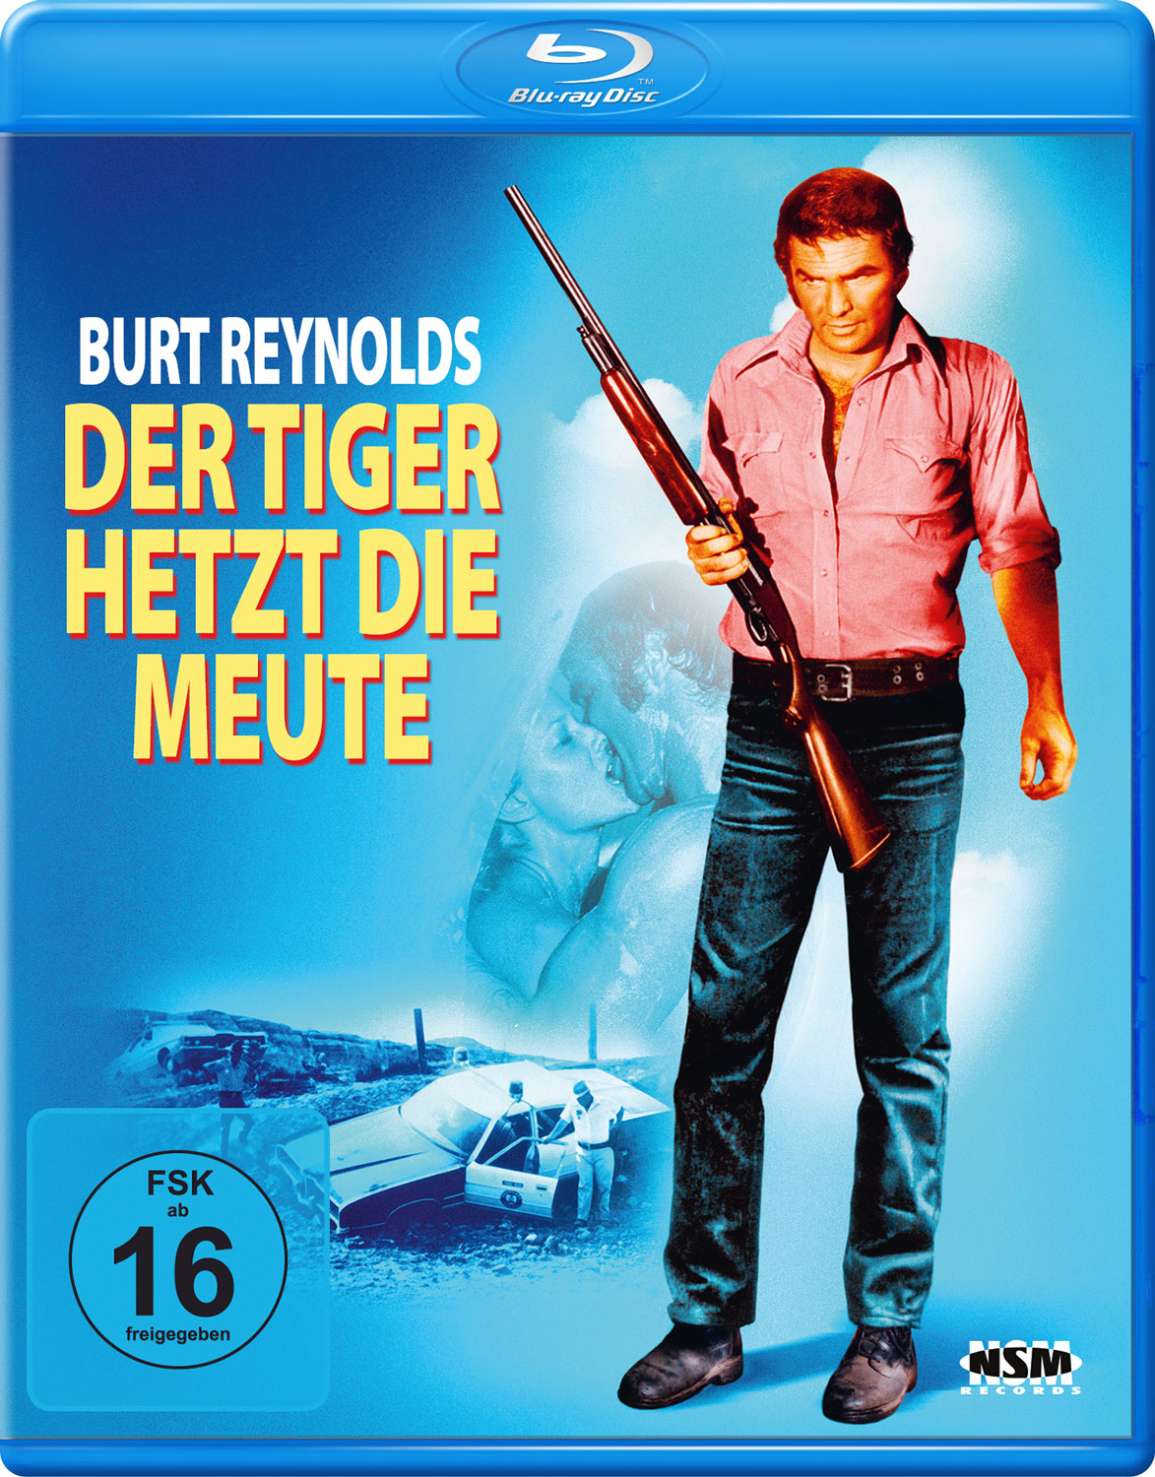 (Blu-ray) Tiger – jpc Der hetzt Meute die